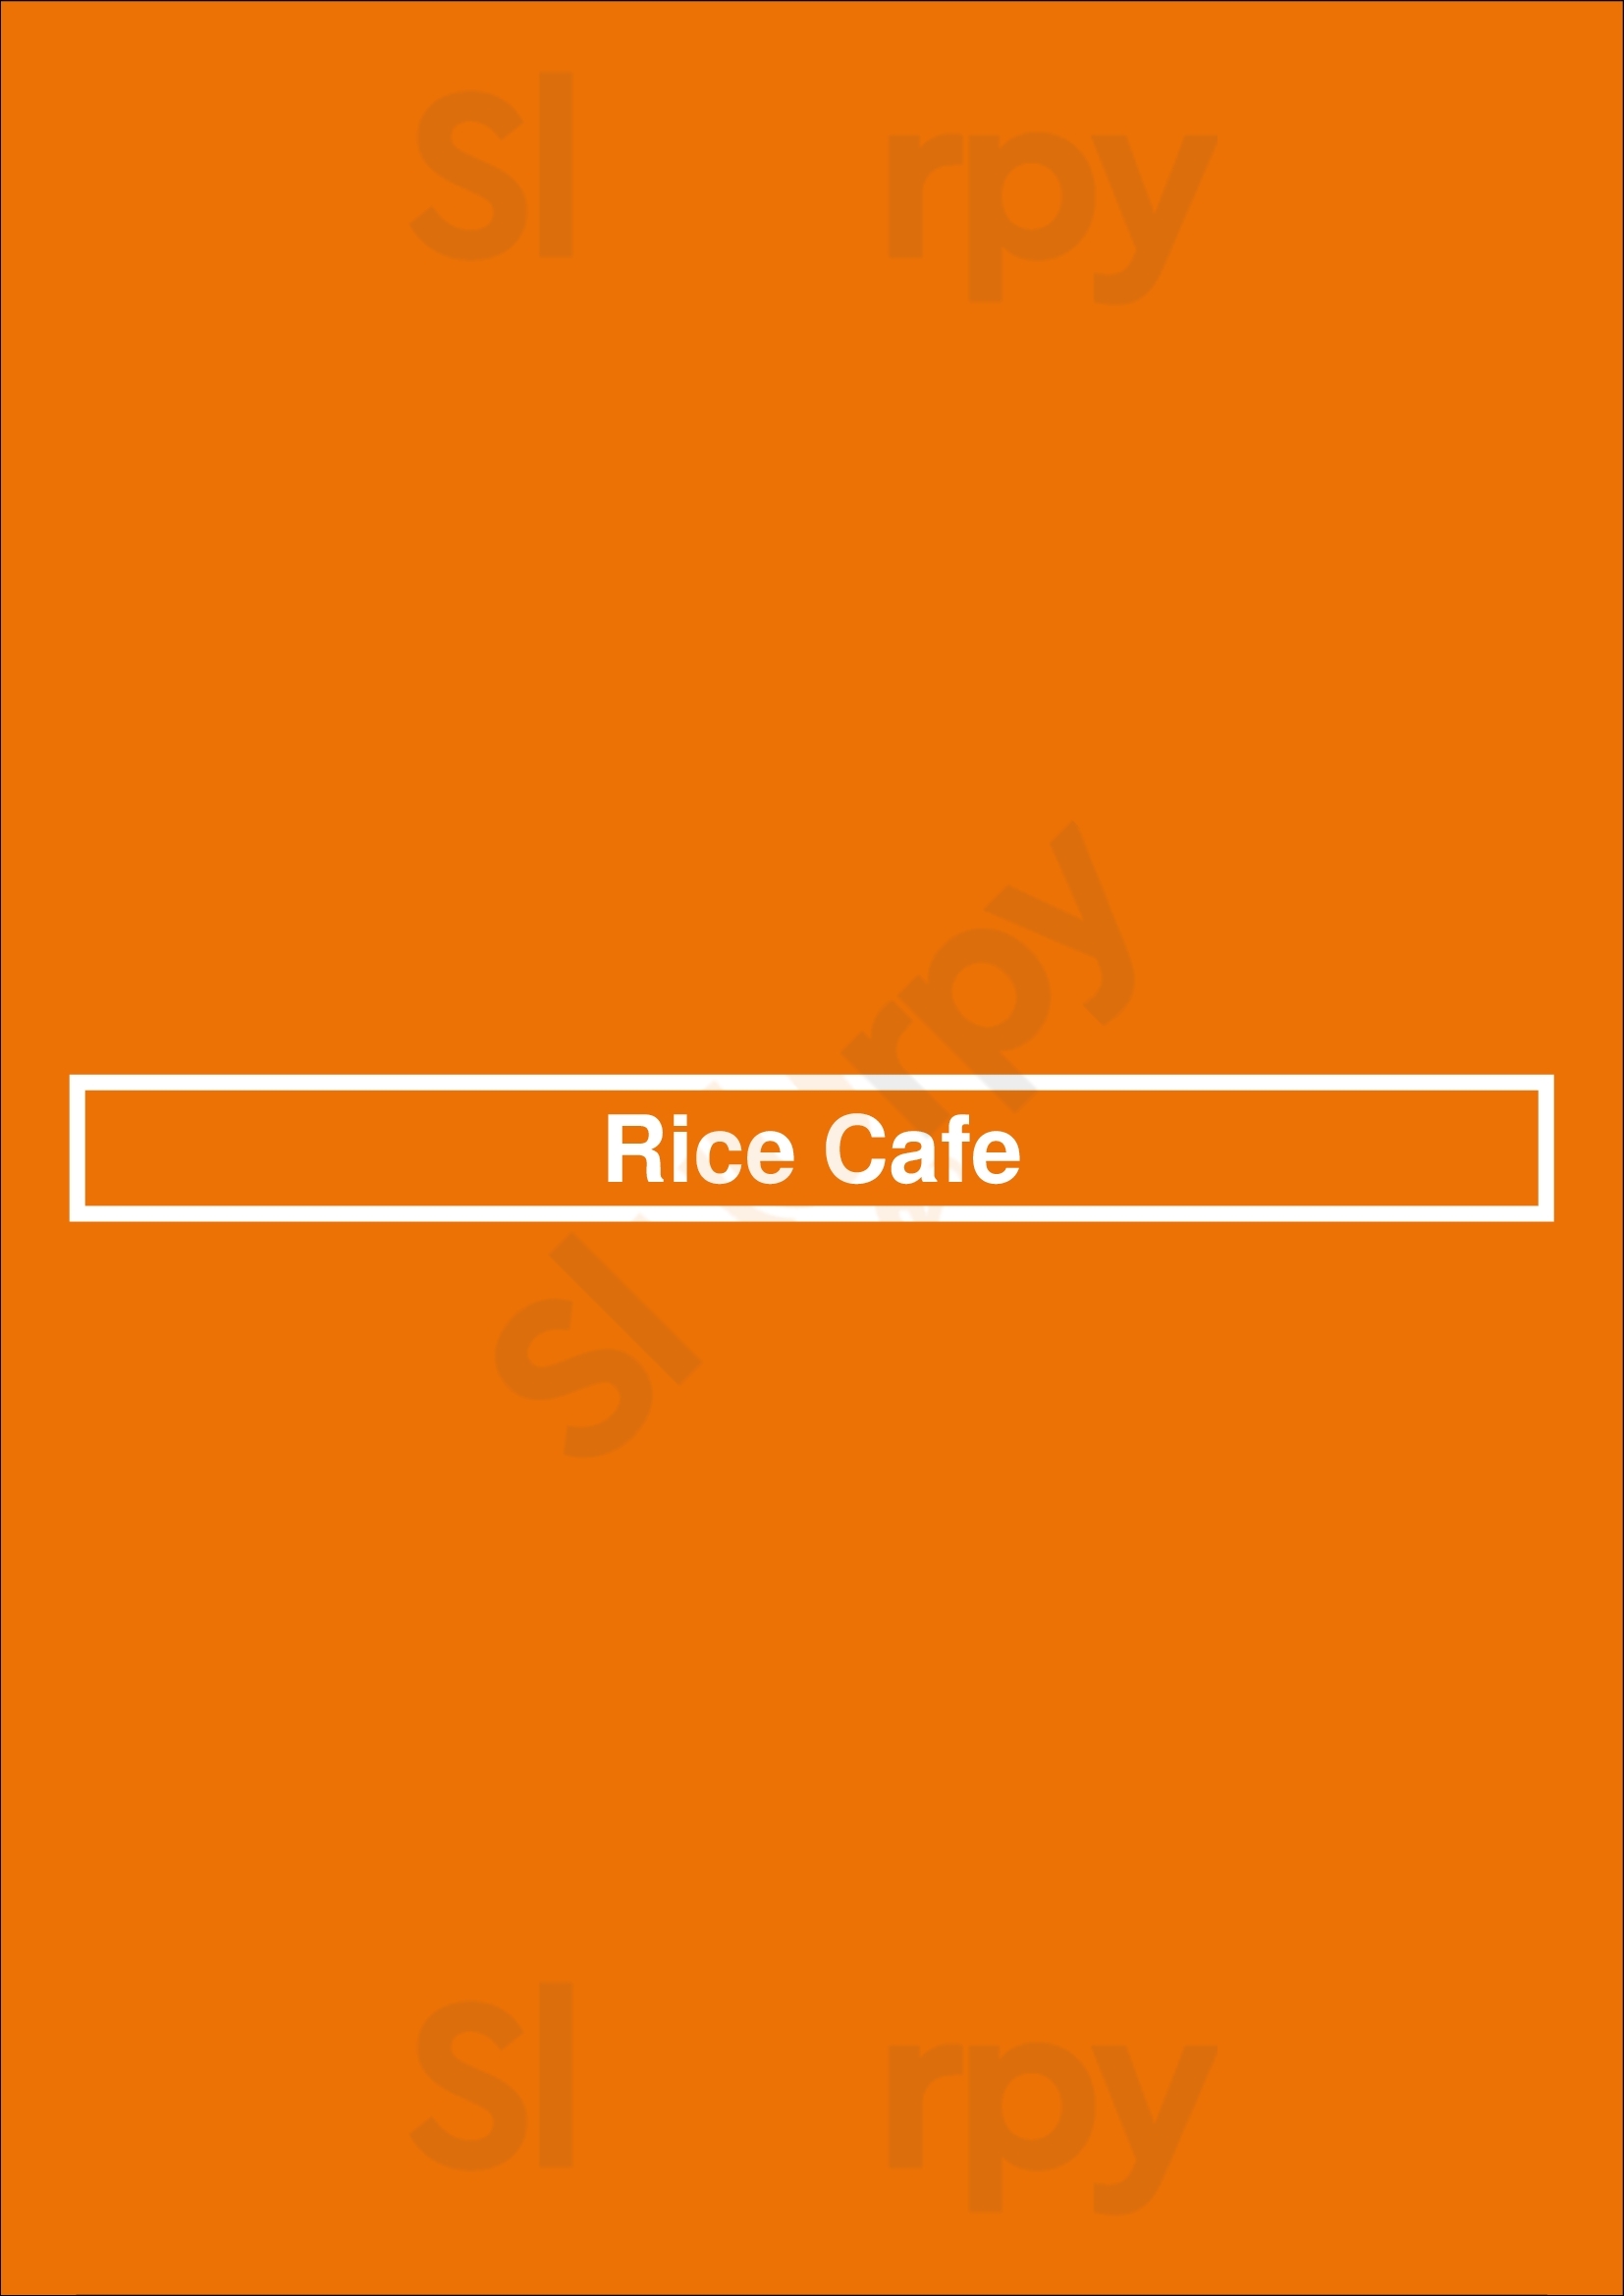 Rice Cafe Chicago Menu - 1